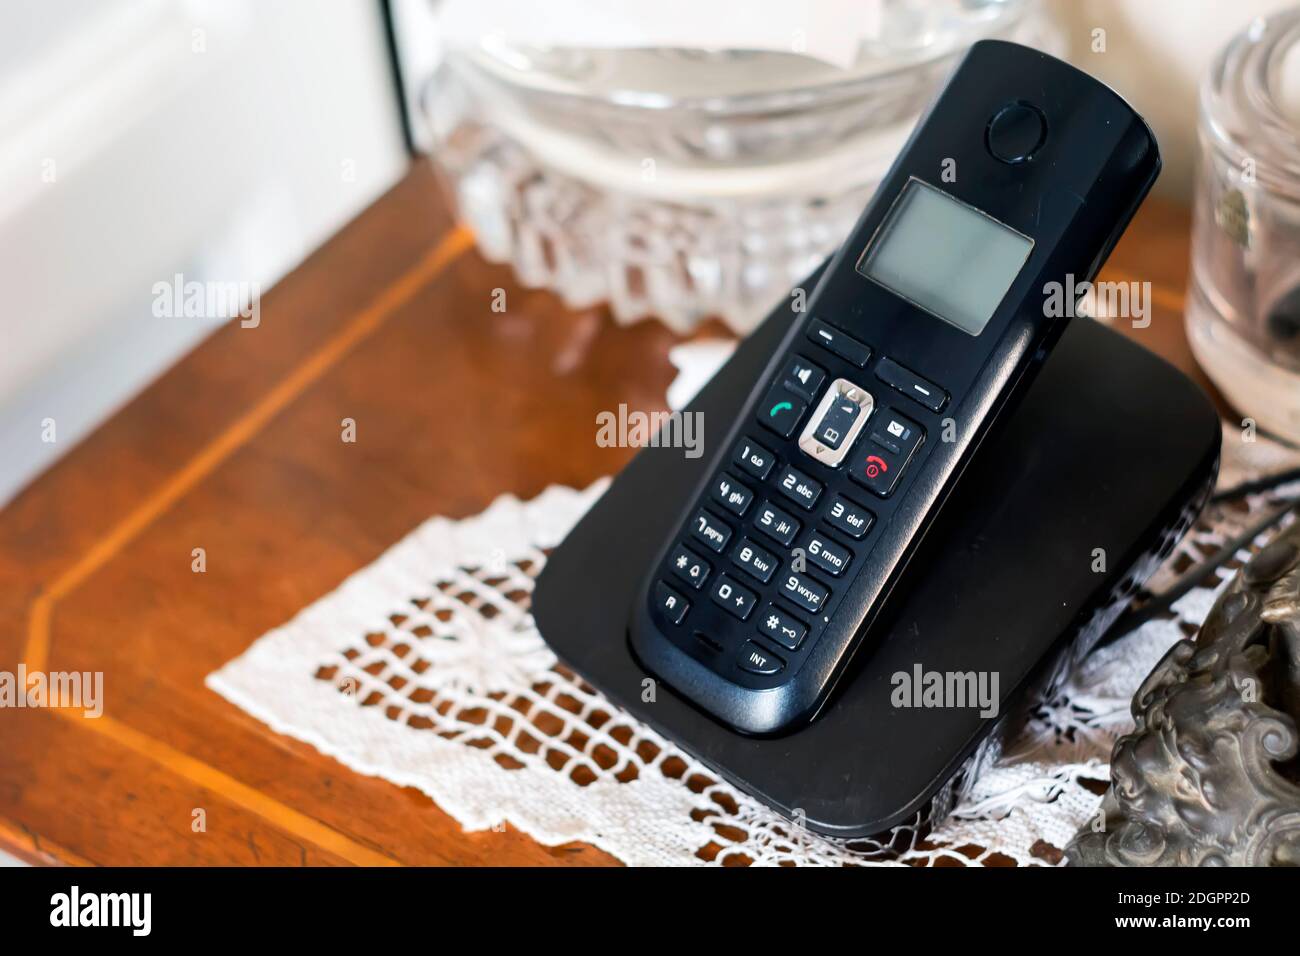 un telefono cordless in plastica nera che si ricarica sulla sua base all'interno di una casa arredata in stile classico con oggetti d'antiquariato e uncinetto bianco. Tecnologia obsoleta Foto Stock